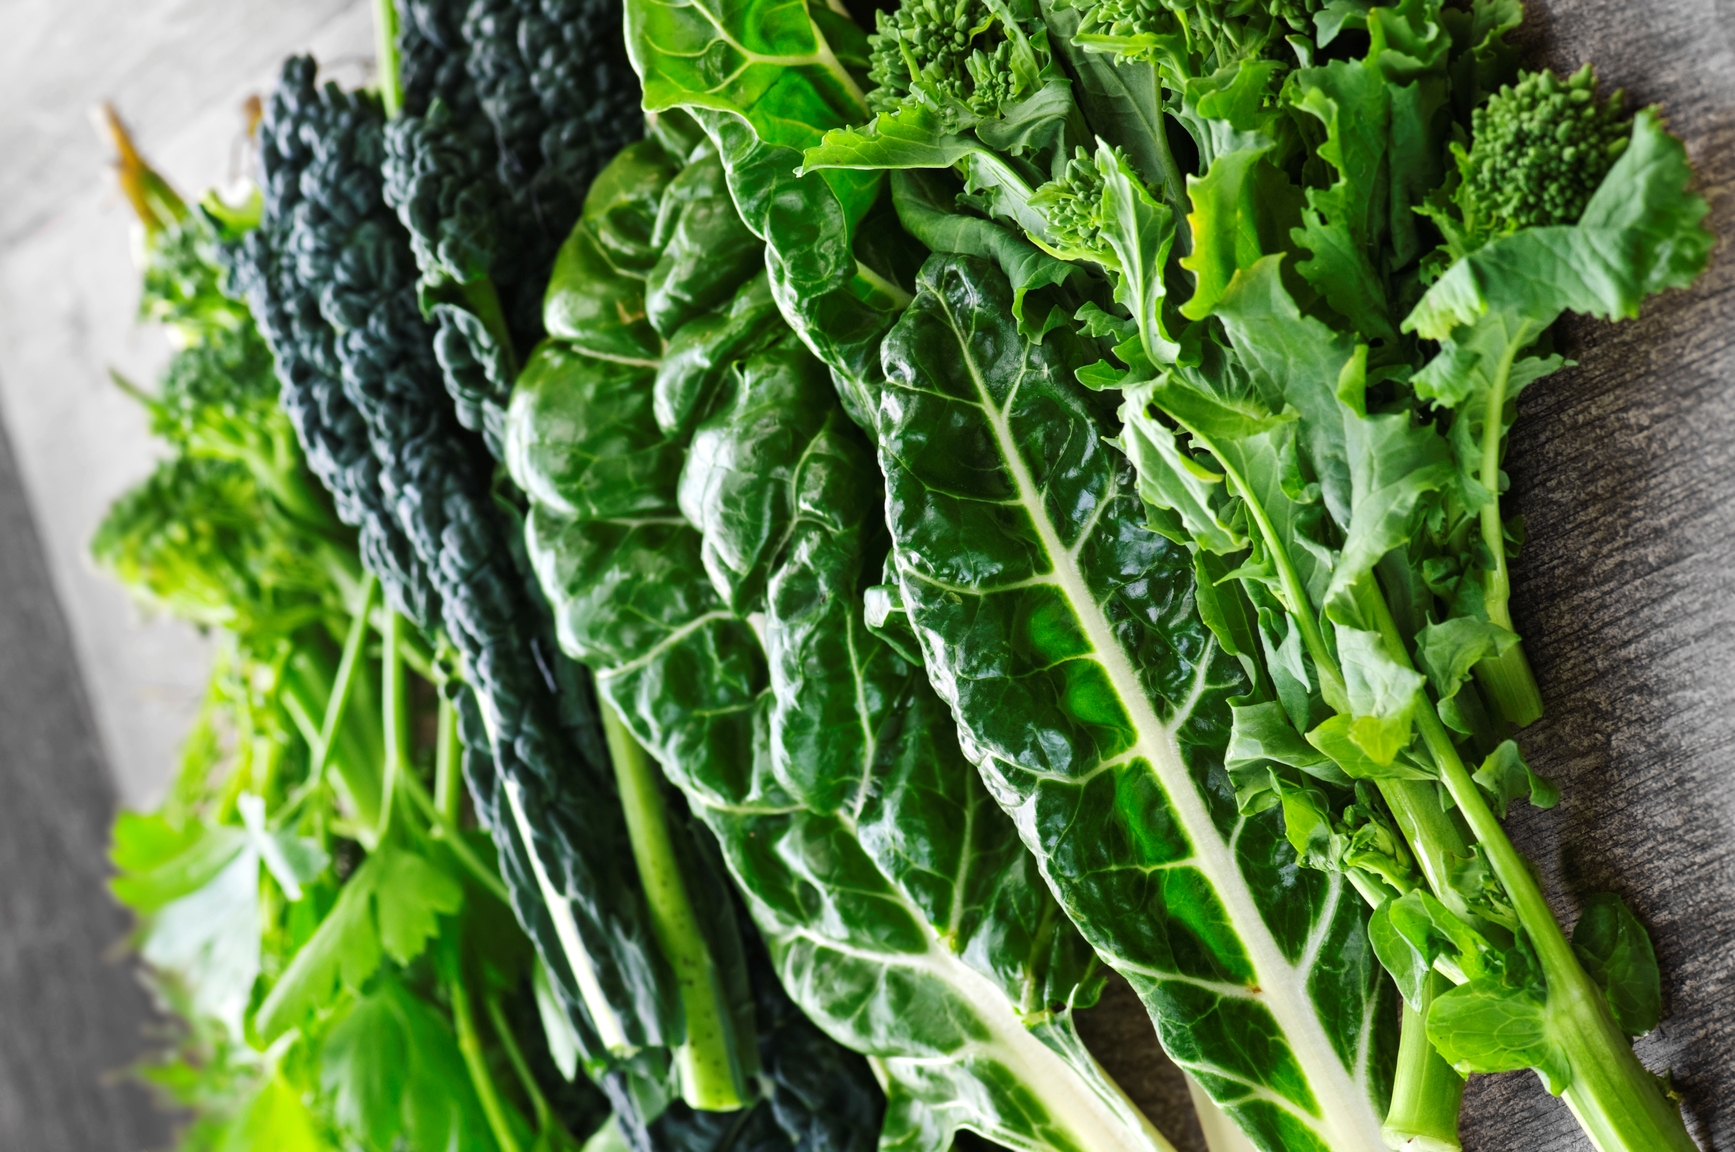 “шпинат – полезные свойства, рецепты и противопоказания «генерала листовой зелени»”